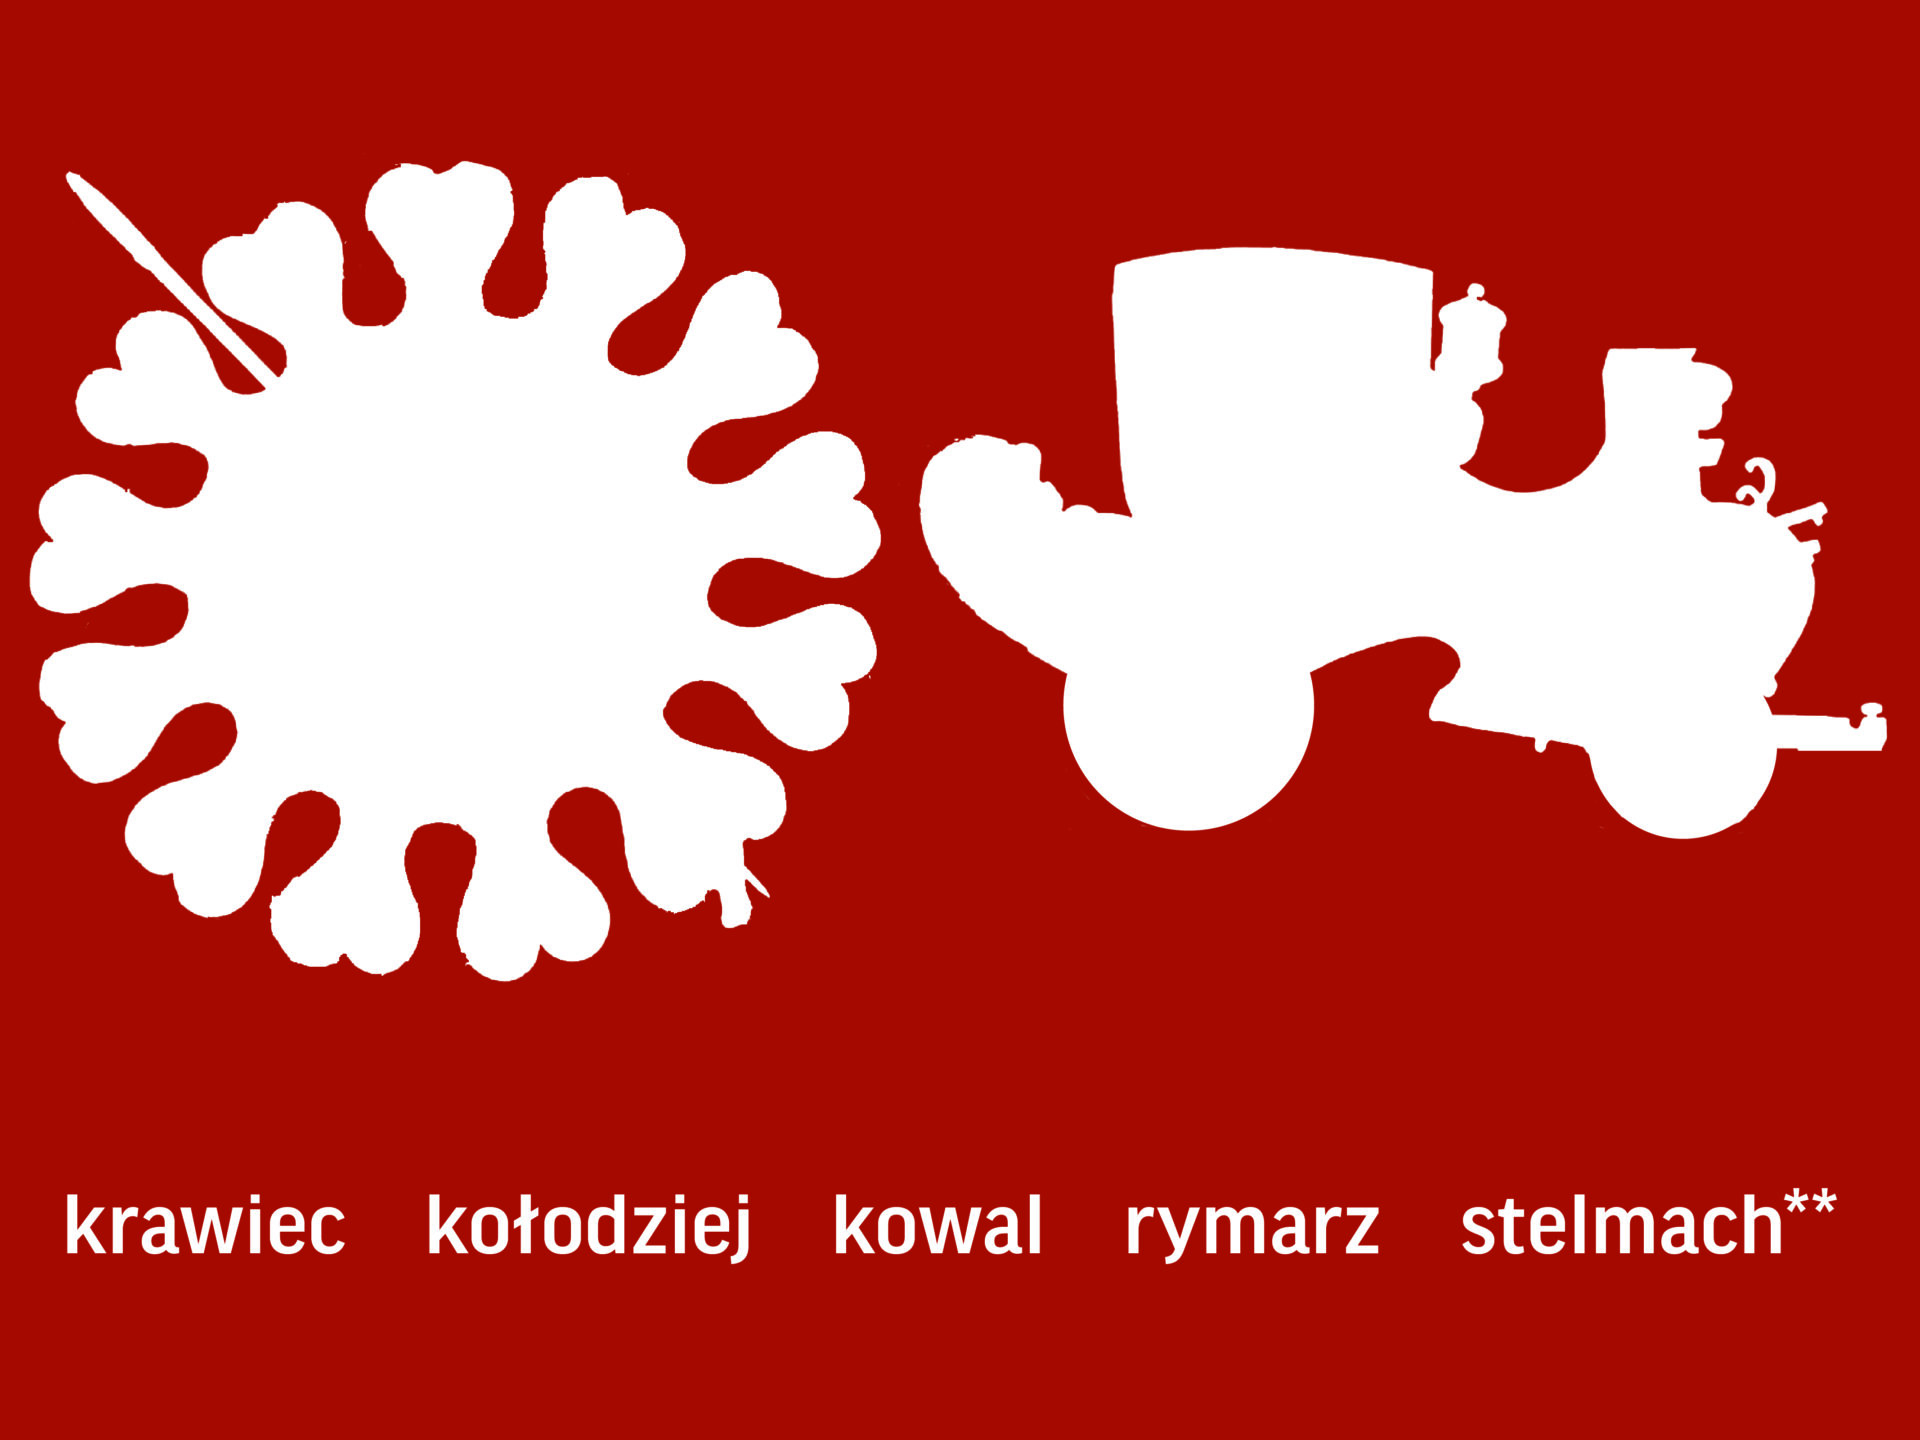 Dwie białe sylwety o nieregularnych kształtach na czerwonym tle. Poniżej napis: krawiec, kołodziej, kowal, rymarz, stelmach